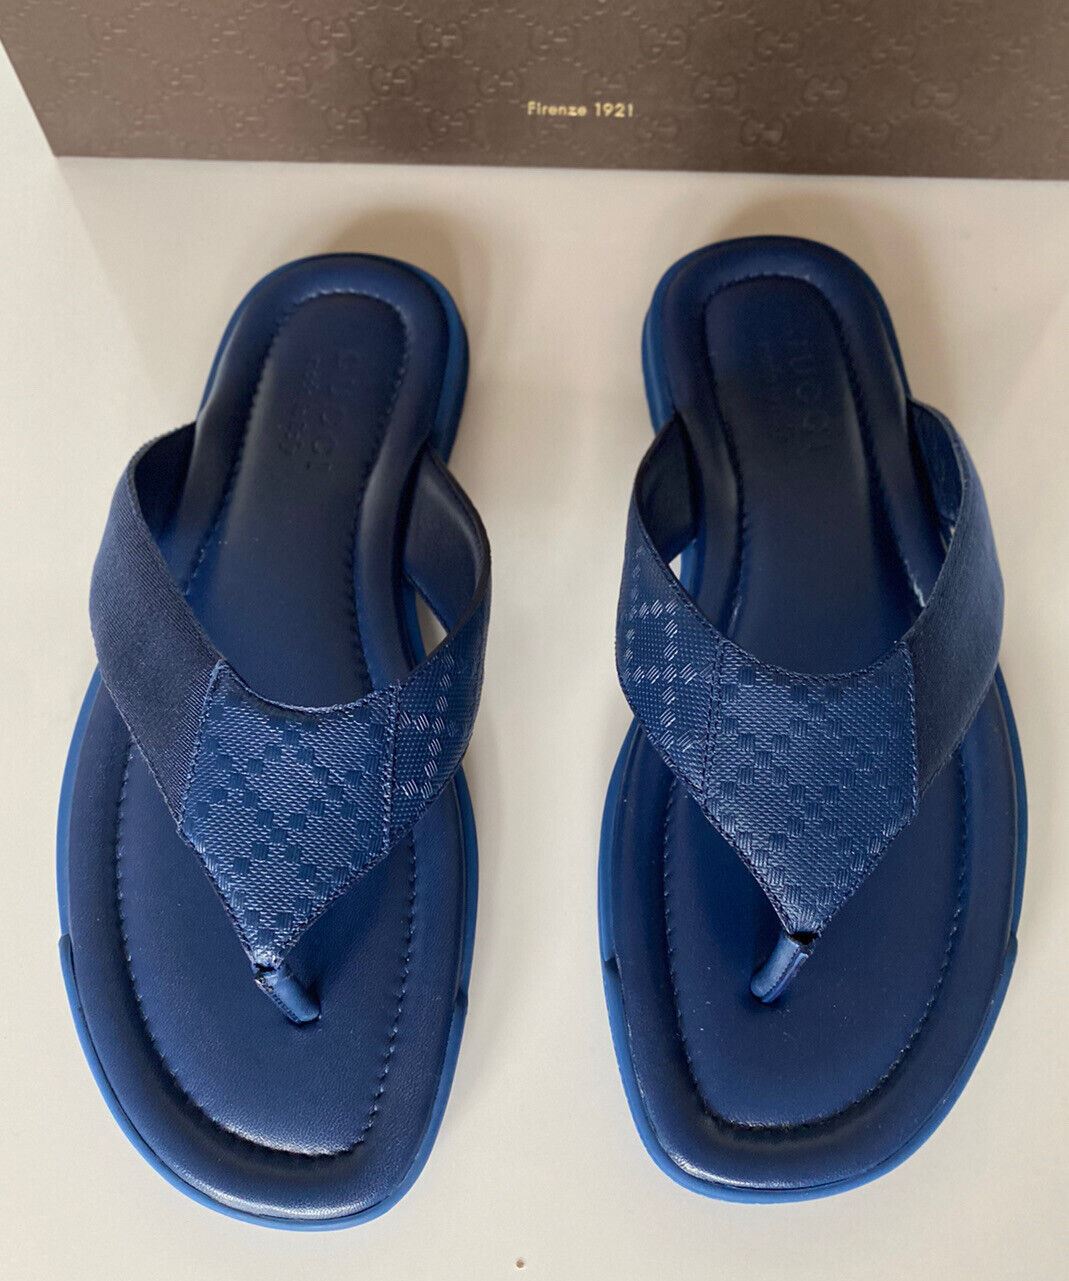 Мужские кожаные сандалии без шнуровки NIB Gucci синие ремешки 9 US (Gucci 8.5) IT 268670 